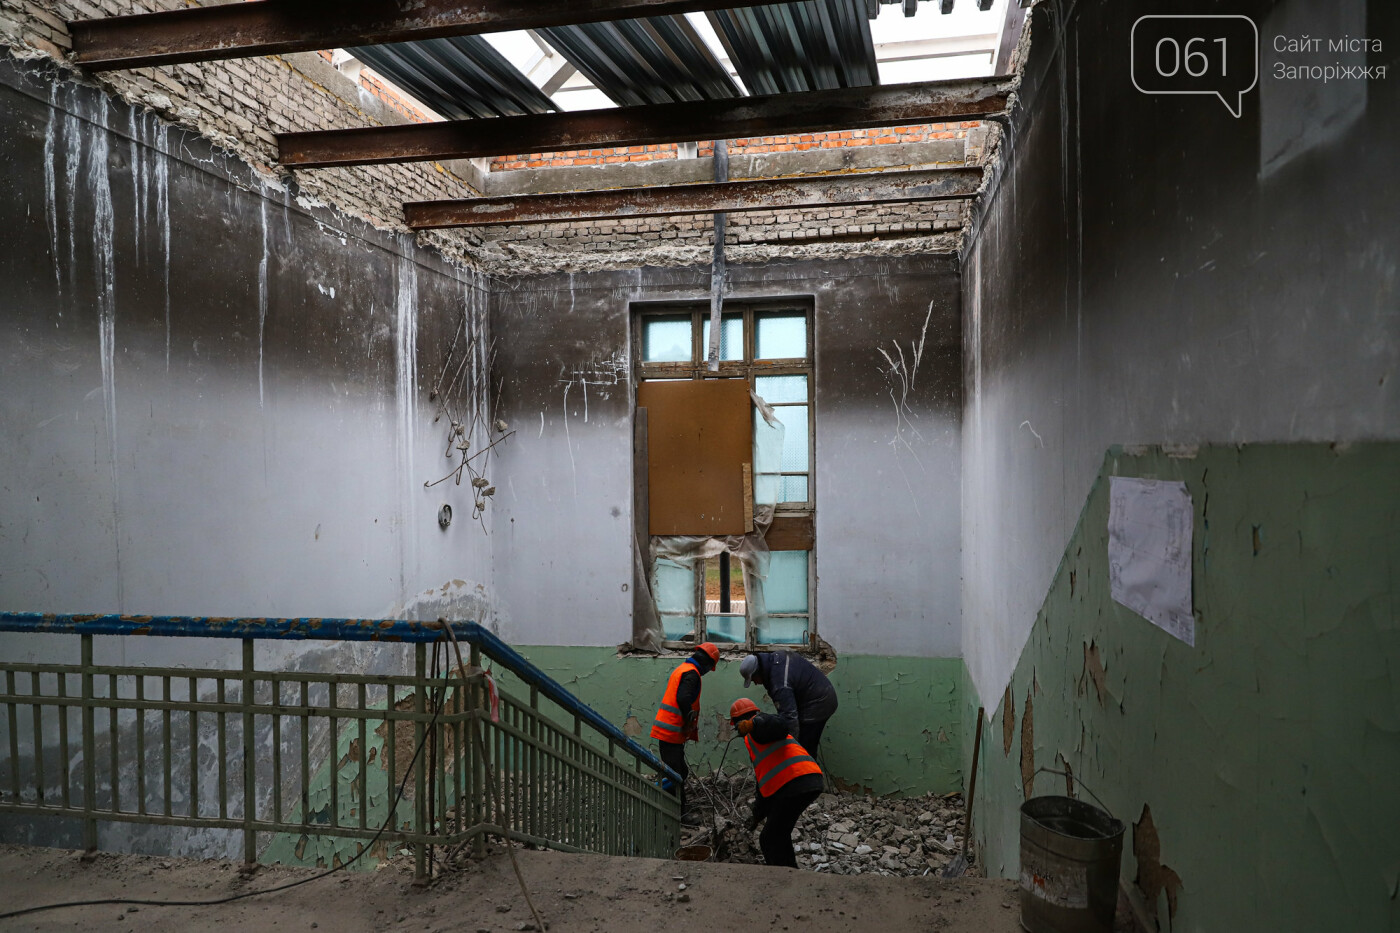 В Запорожье восстанавливают школу, которая пострадала во время масштабного пожара 5 лет назад, - ФОТОРЕПОРТАЖ , фото-46